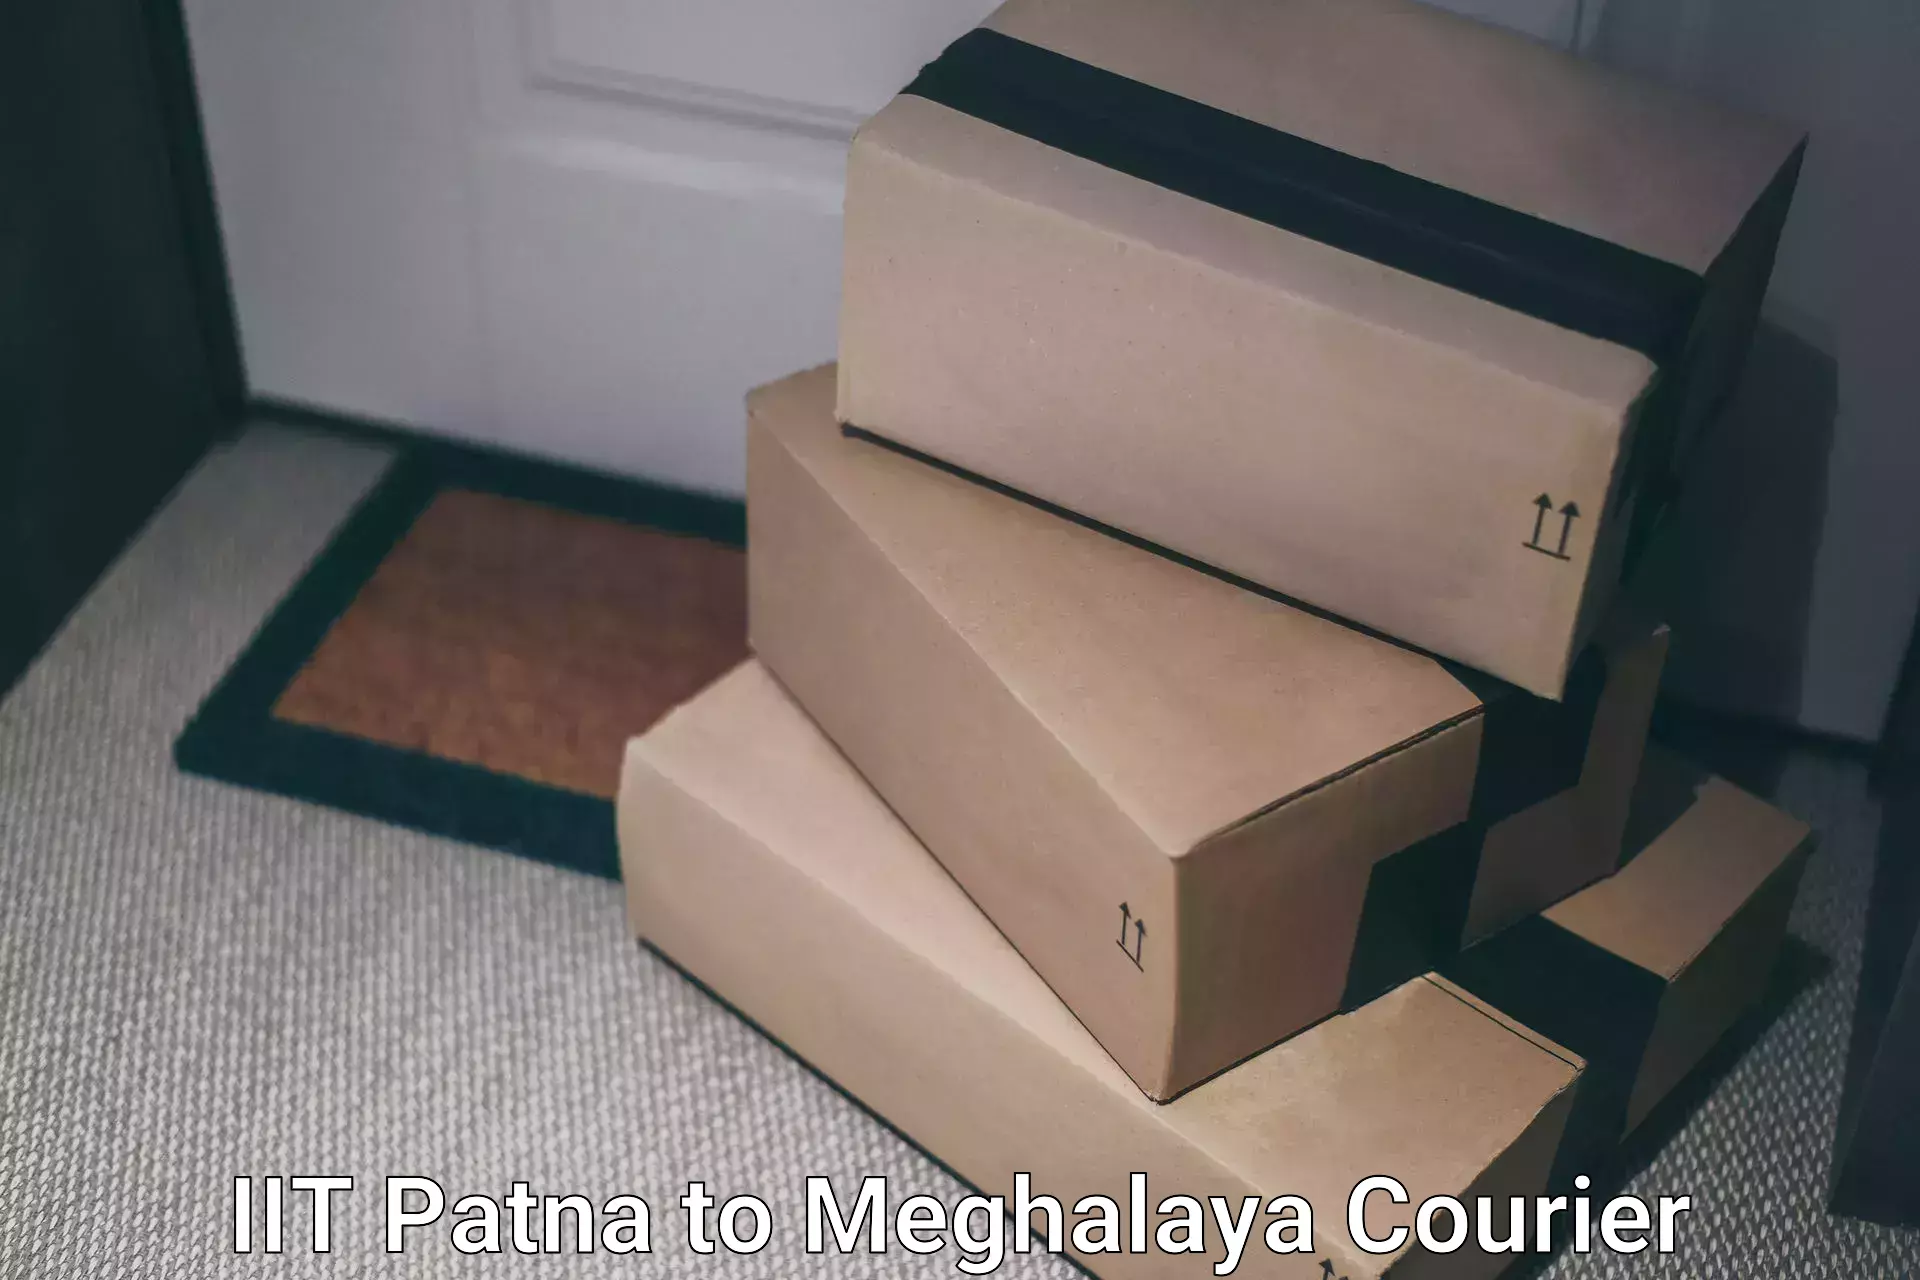 User-friendly courier app IIT Patna to Williamnagar